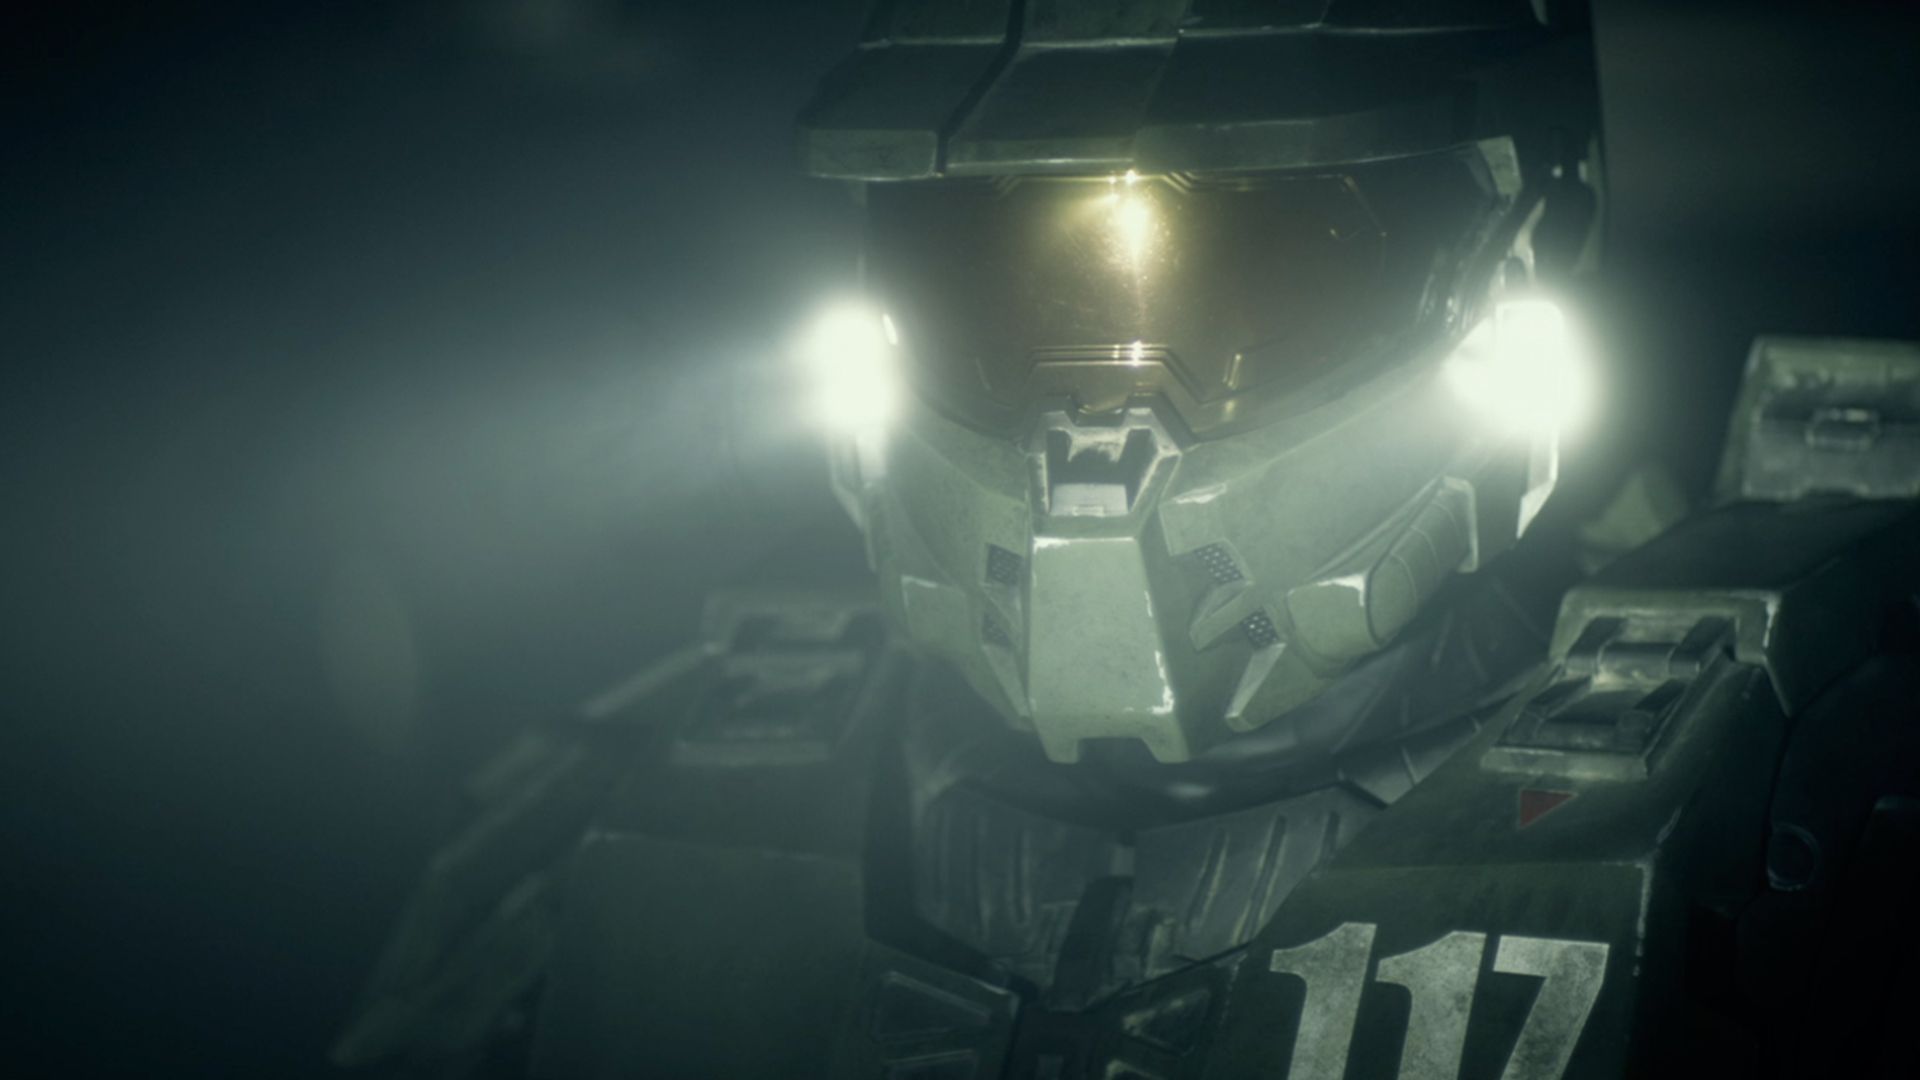 Halo 4: Forward Unto Dawn background